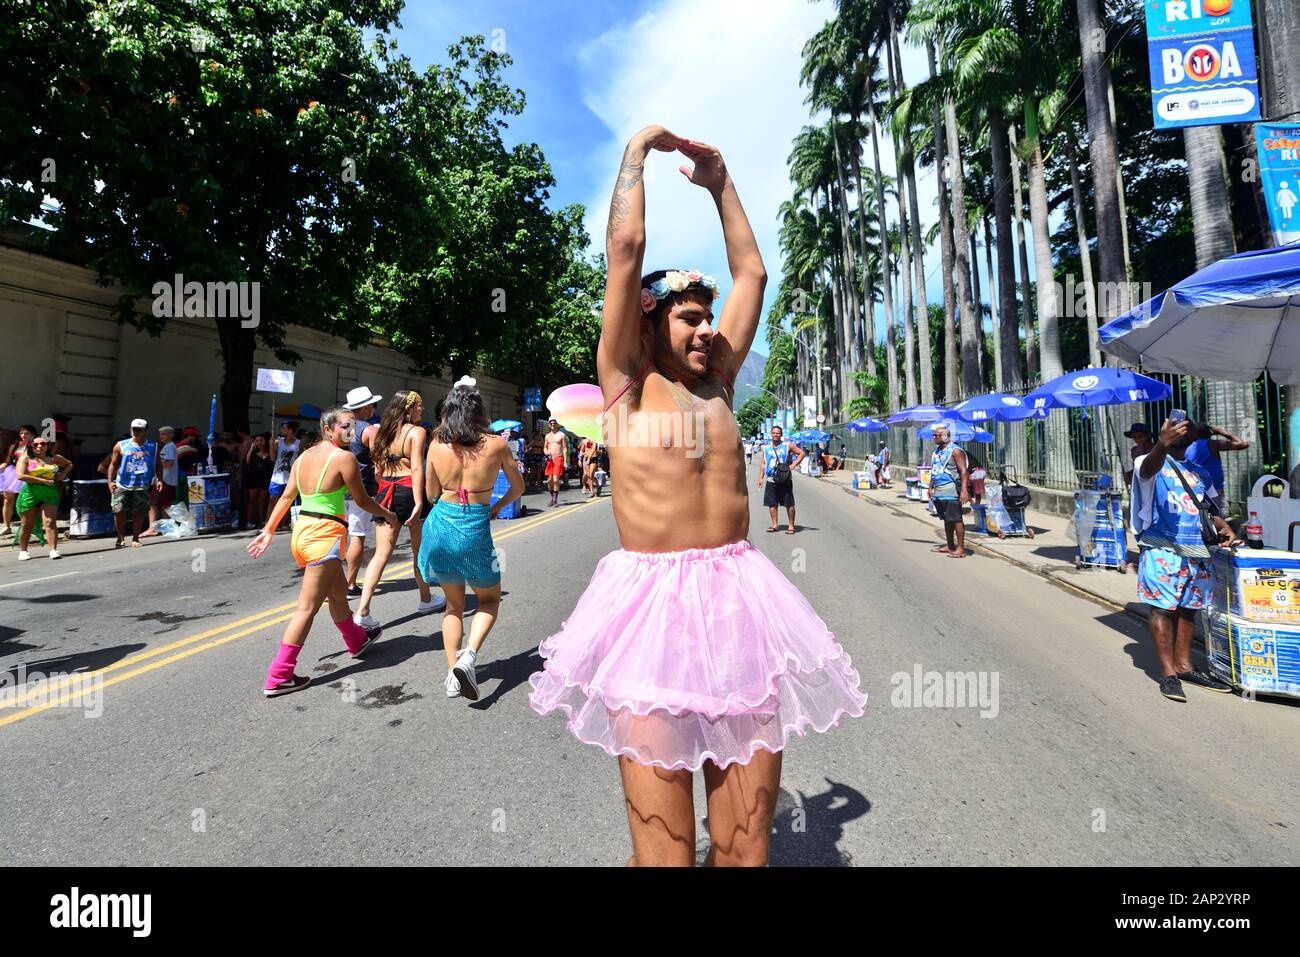 Sud America, Brasile - 5 Marzo 2019: un giovane uomo travestito da una ballerina esegue durante una strada sfilata di carnevale svoltasi a Rio de Janeiro. Foto Stock